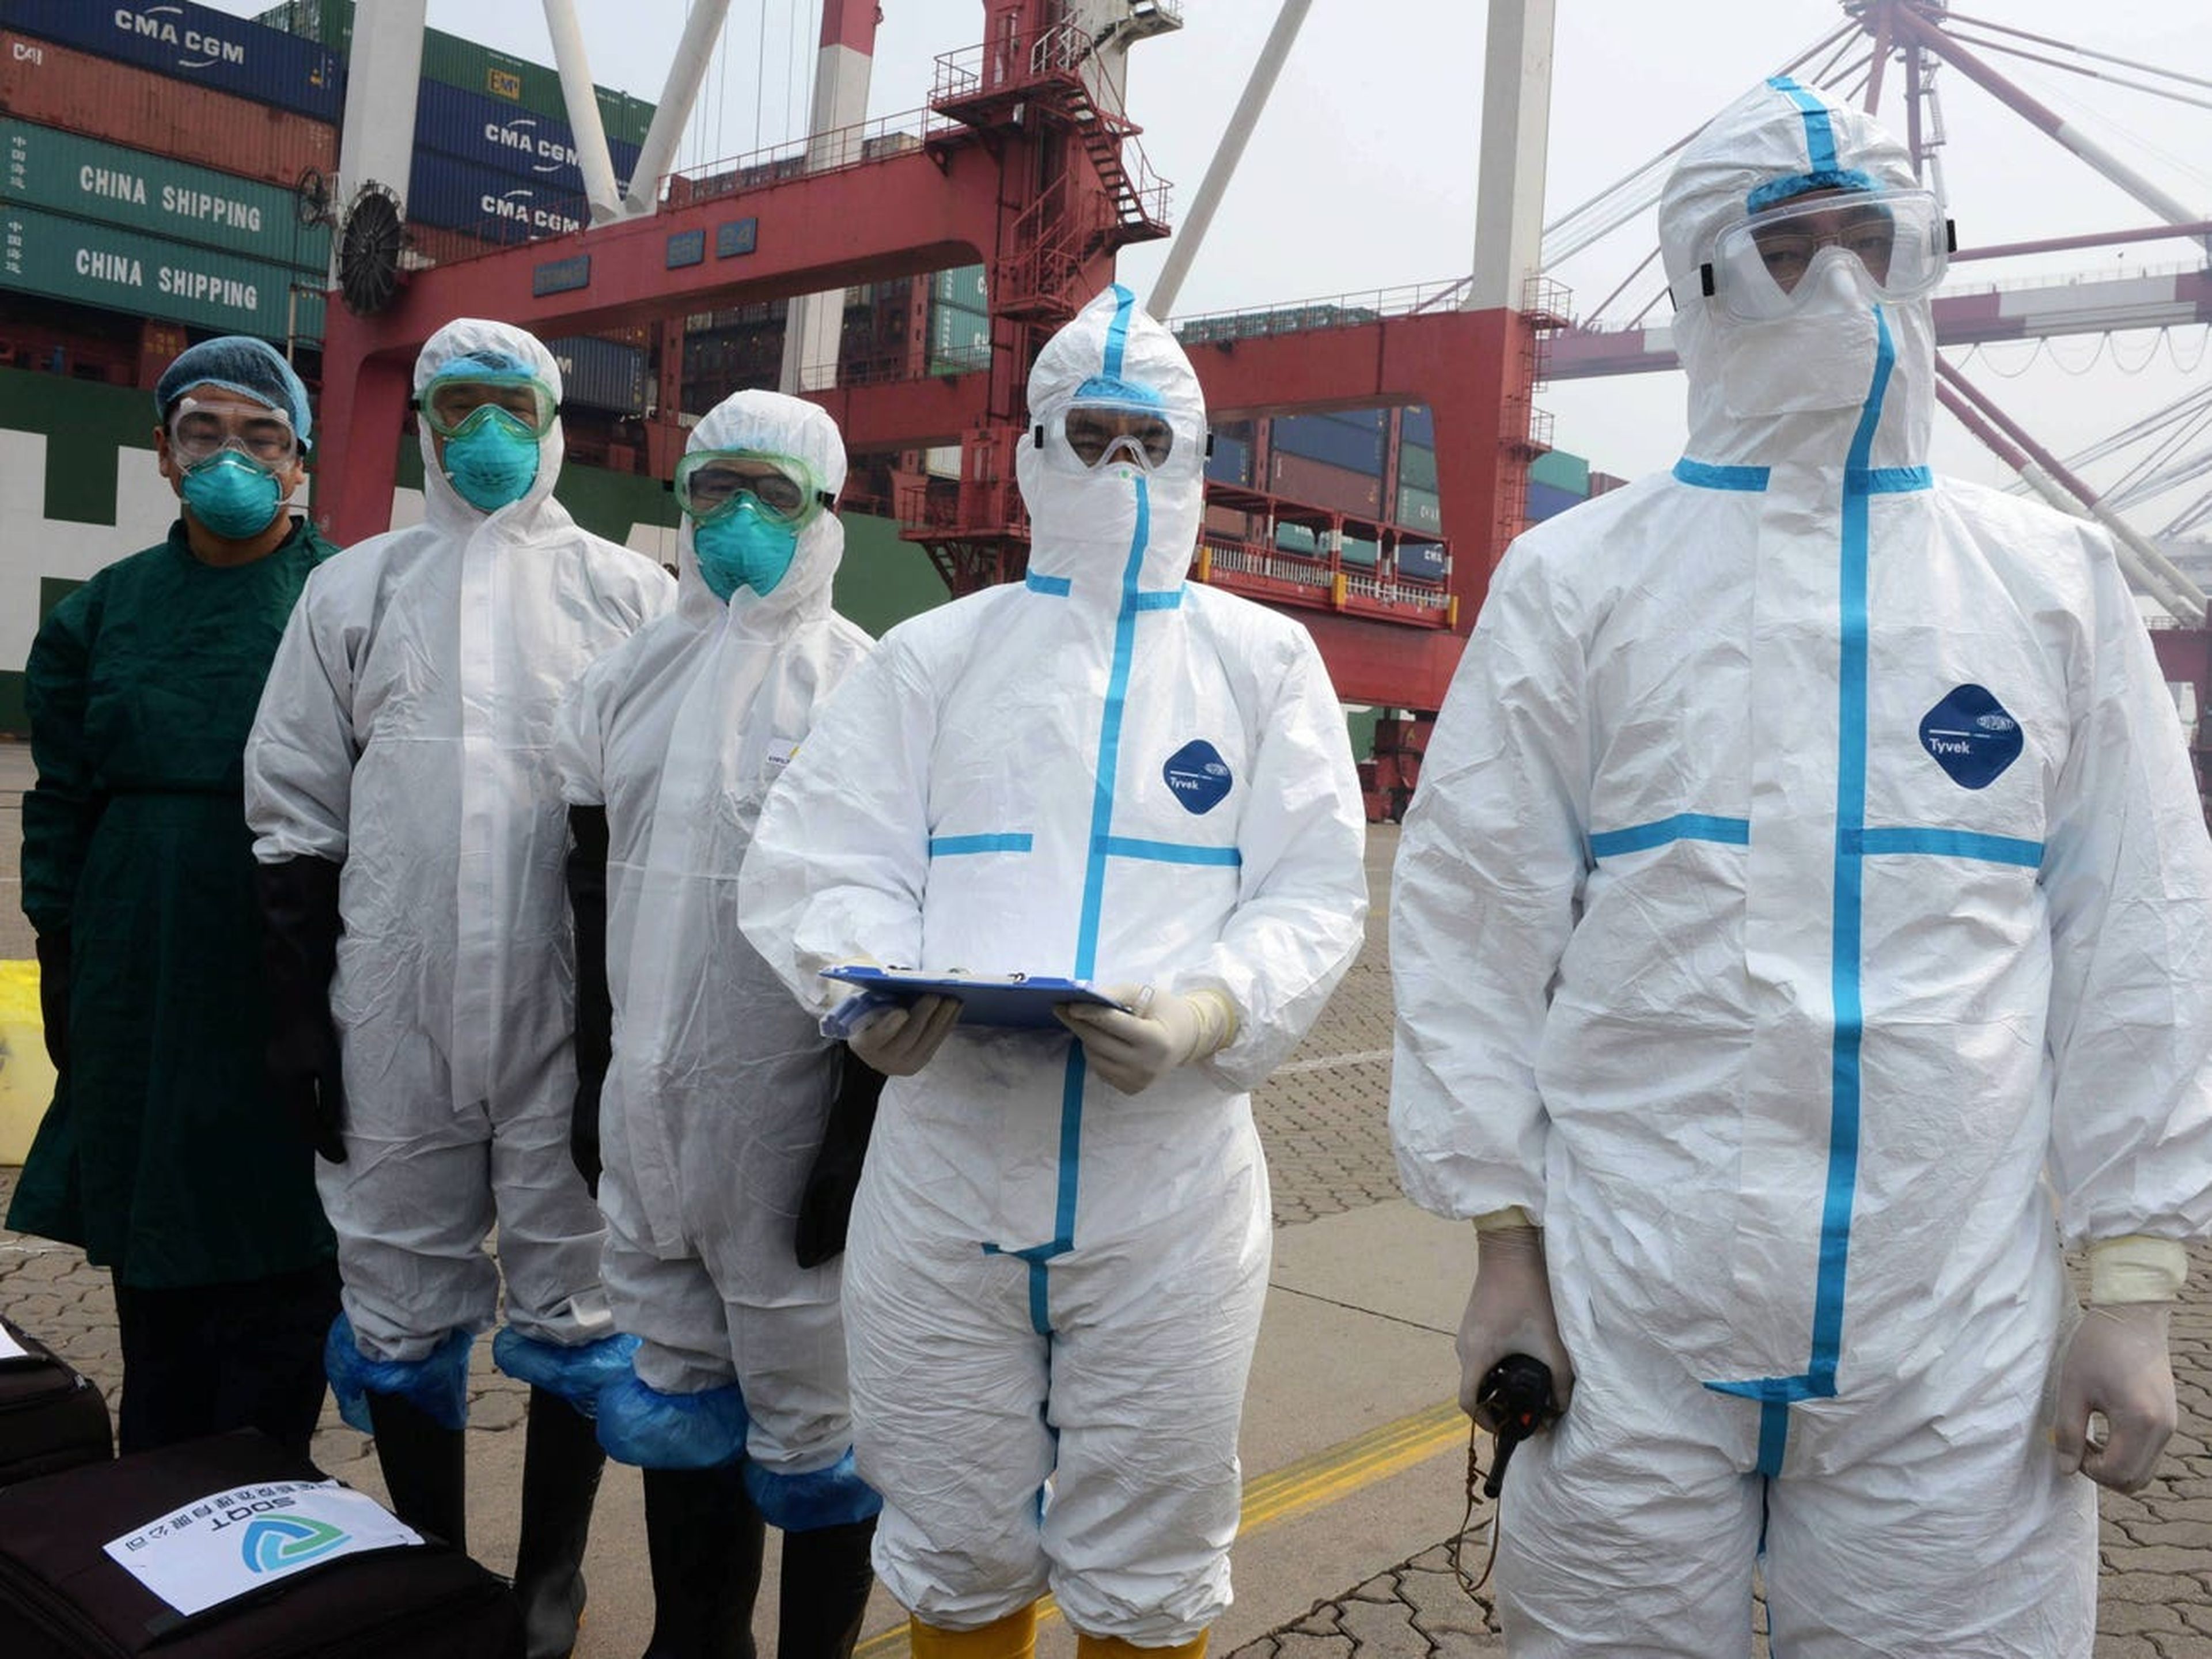 Investigadores lidian con un supuesto paciente del Síndrome Respiratorio de Oriente Medio (MERS) en un puerto marítimo el 18 de junio de 2015 en Qingdao, China.